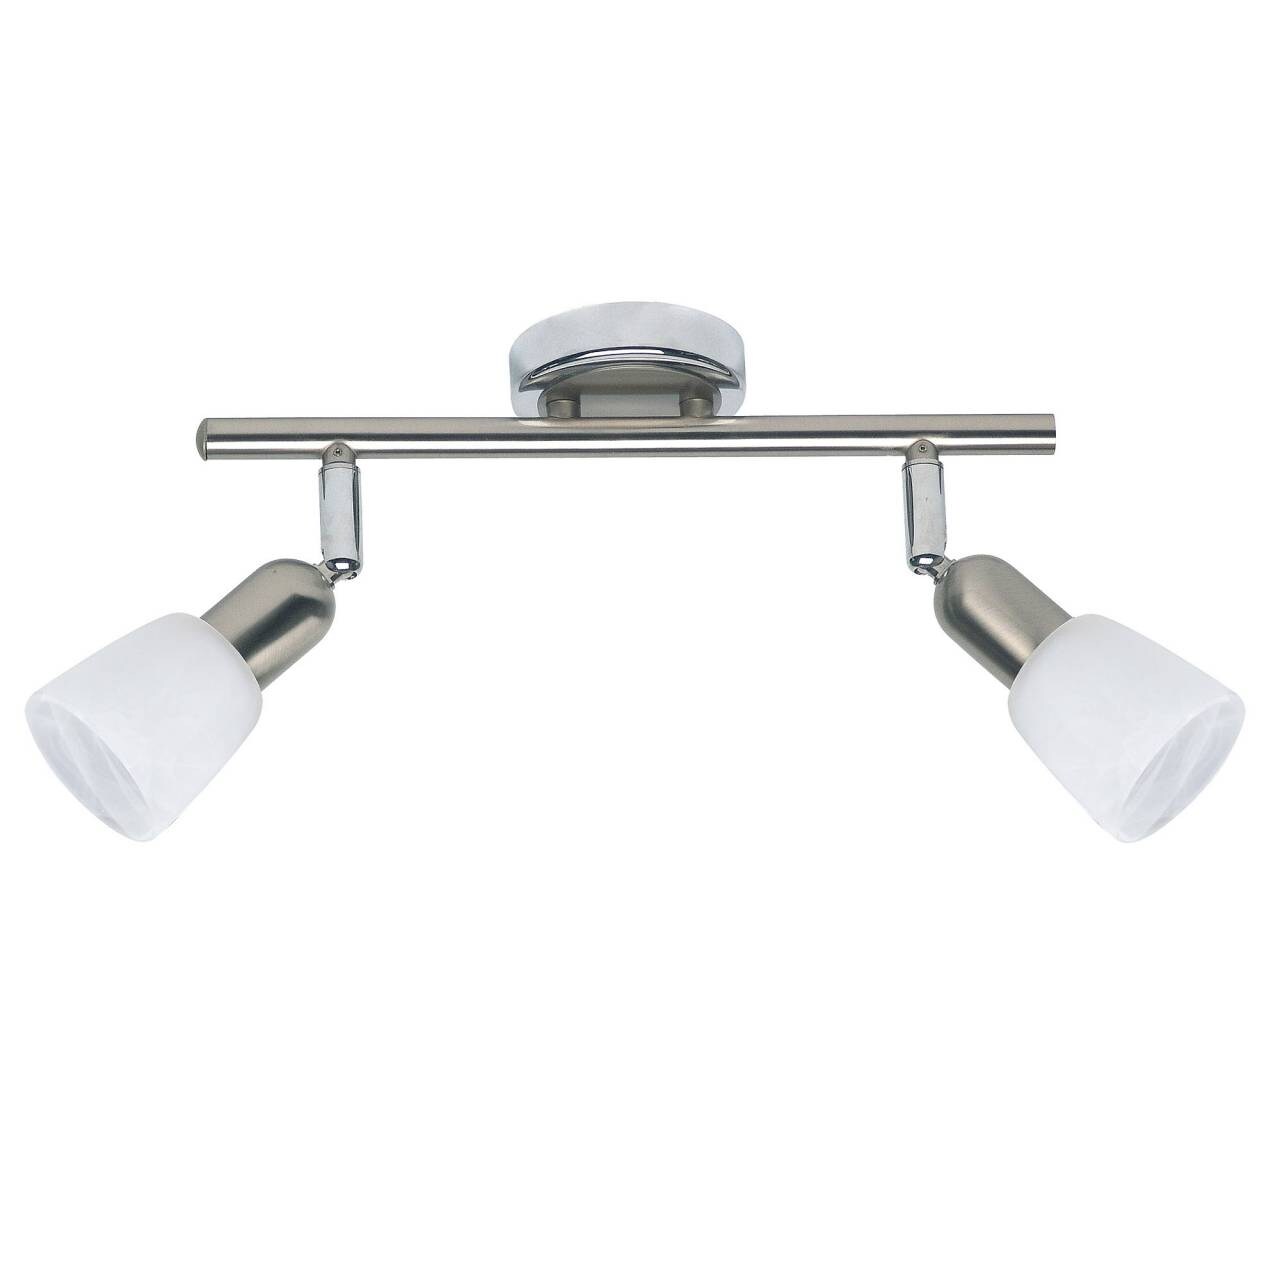 BRILLIANT Lampe Sofia Spotrohr 2flg eisen/chrom/weiß   2x D45, E14, 40W, geeignet für Tropfenlampen (nicht enthalten)   